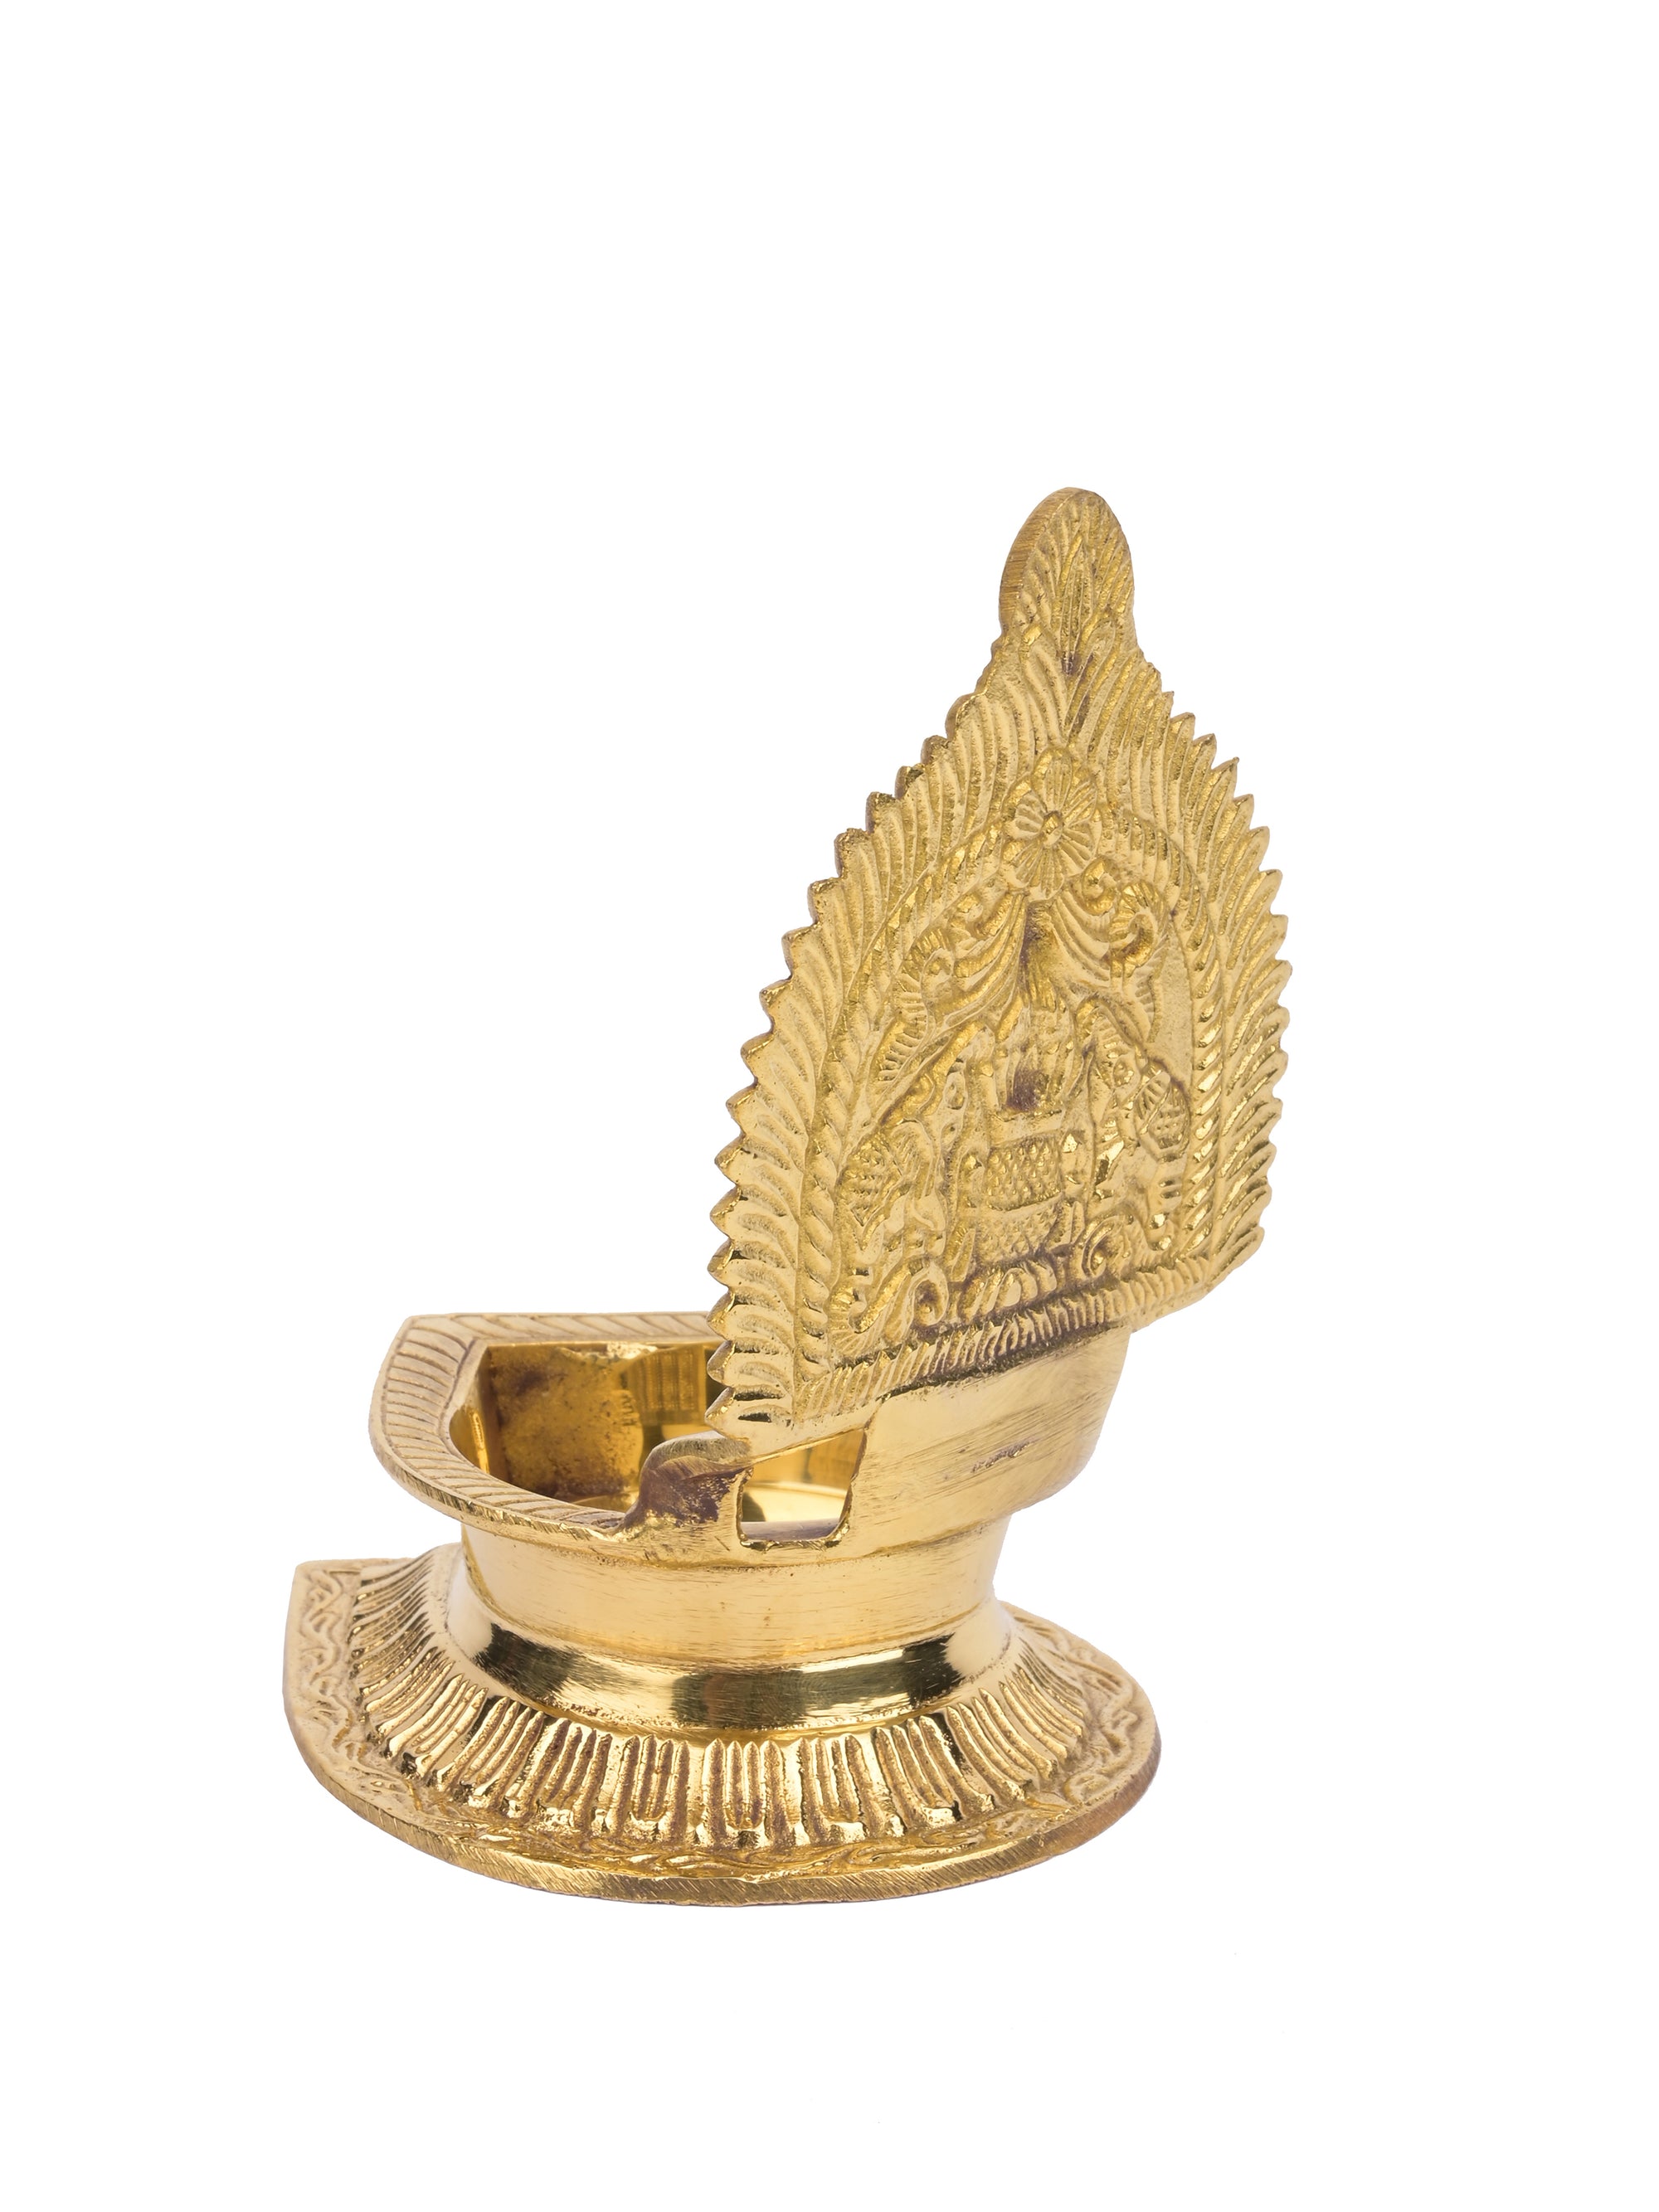 Brass Kanchipuram Kamakshi single petal lamp / diya - 5 inches height - The Heritage Artifacts